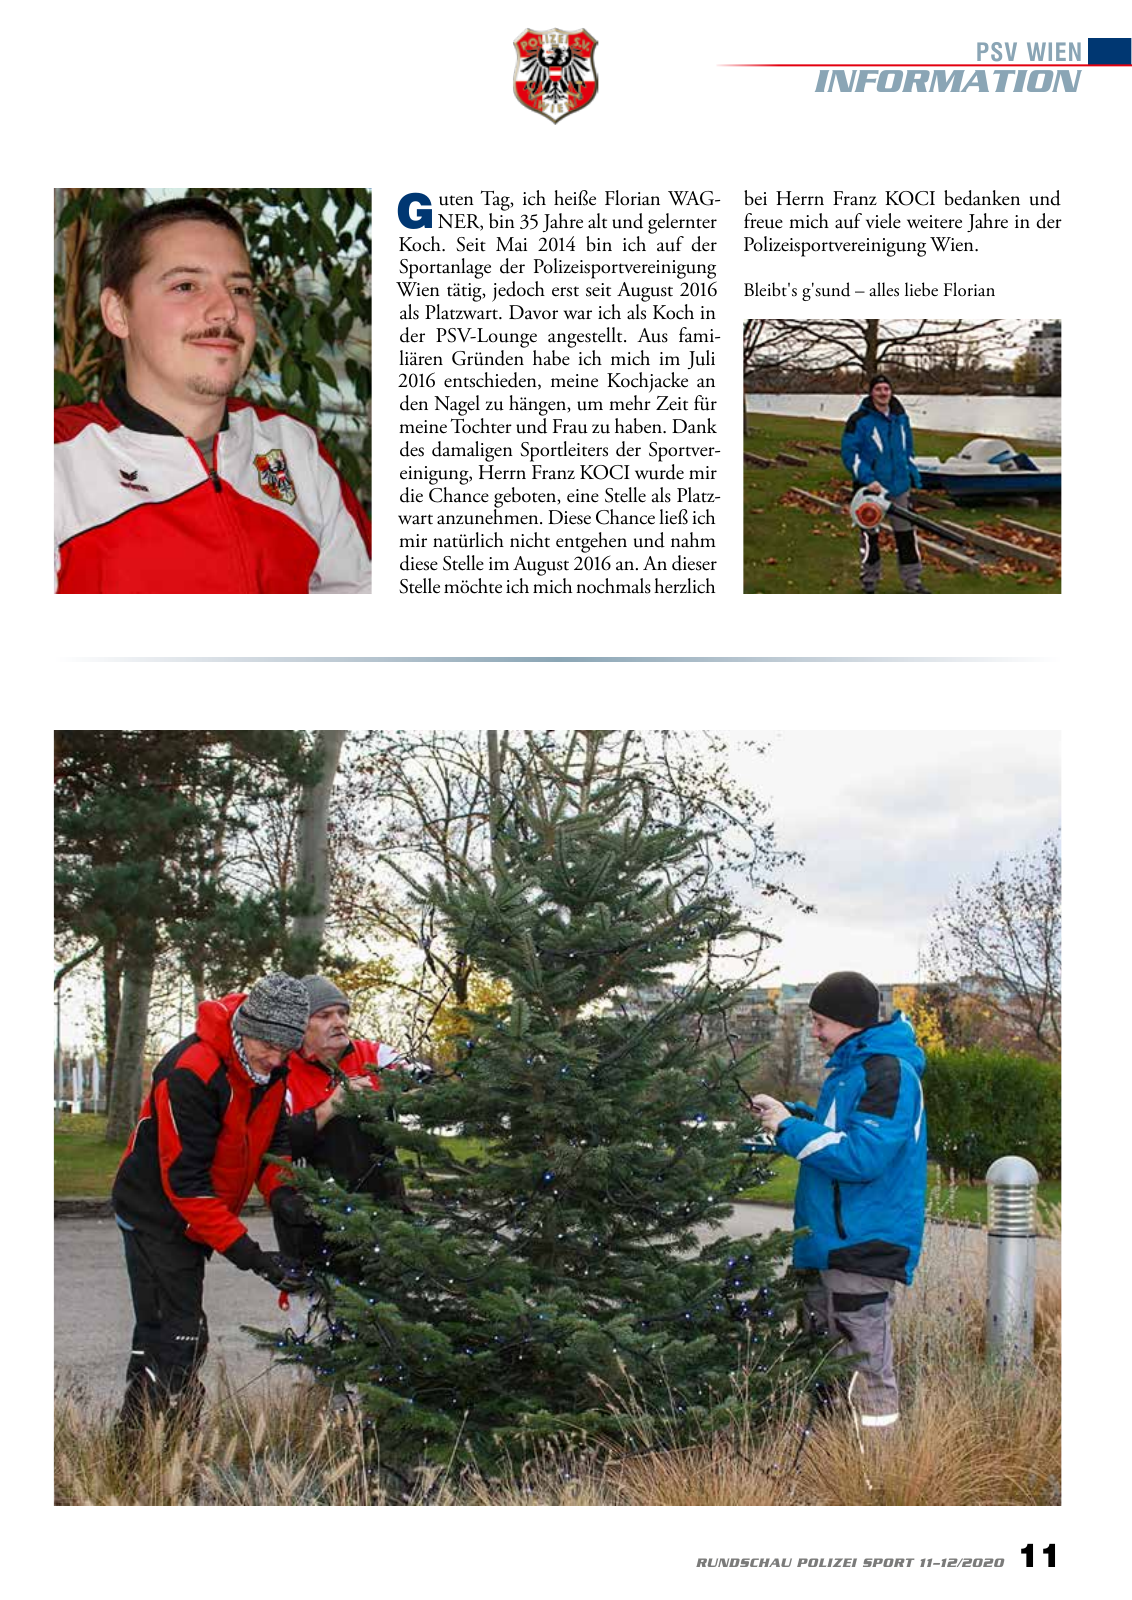 Vorschau Rundschau Polizei Sport 11-12/2020 Seite 11